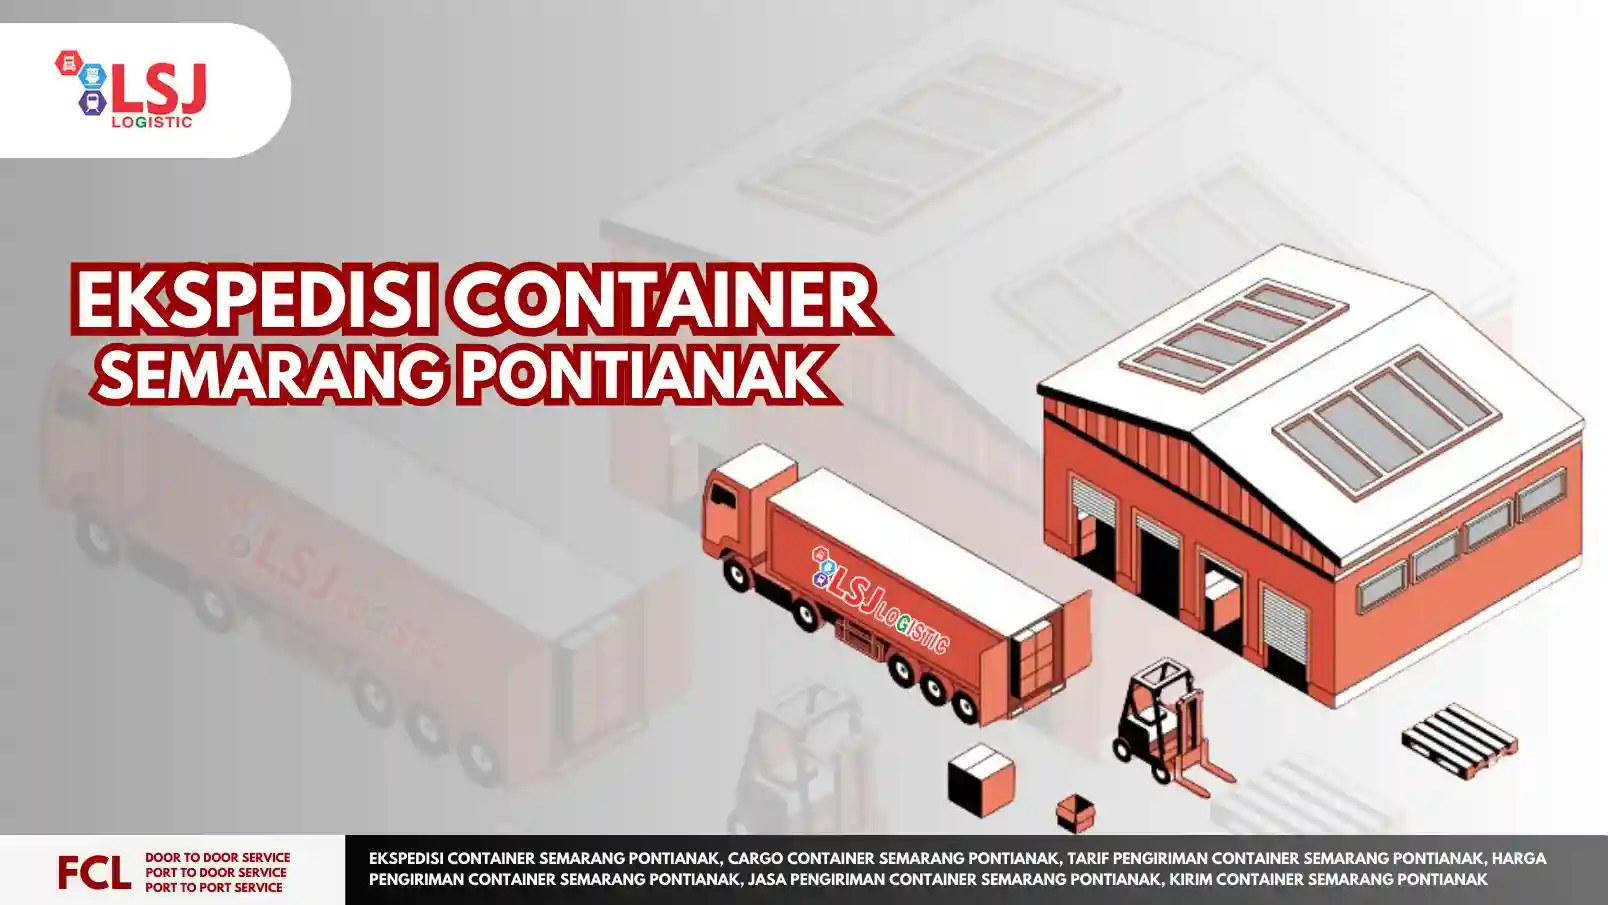 Ekspedisi Container Semarang Pontianak